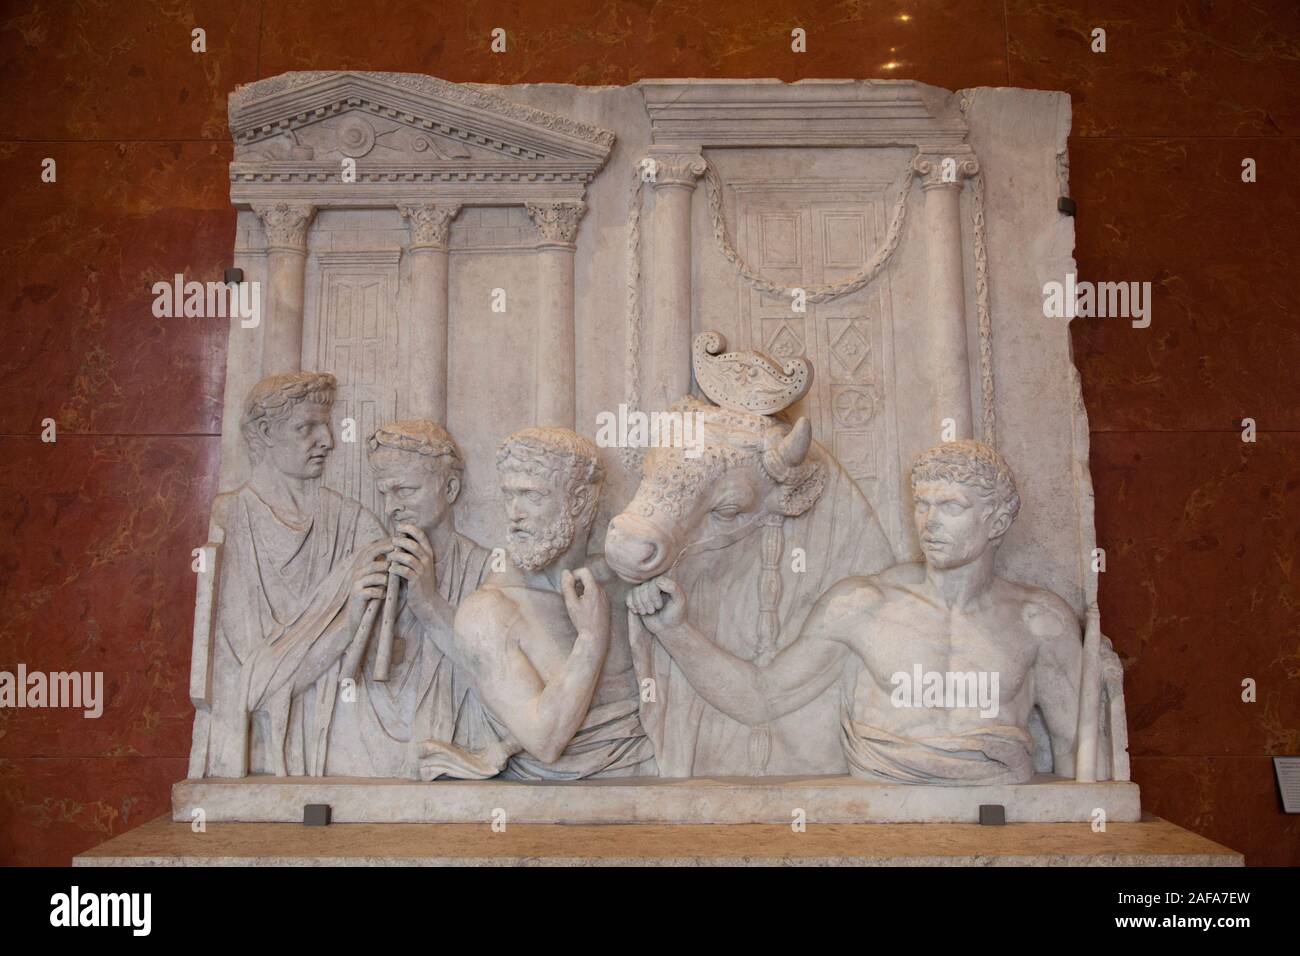 Fragment de relief architectural au Musée du Louvre, Paris. Il montre une cérémonie religieuse impliquant le sacrifice d'un taureau Banque D'Images